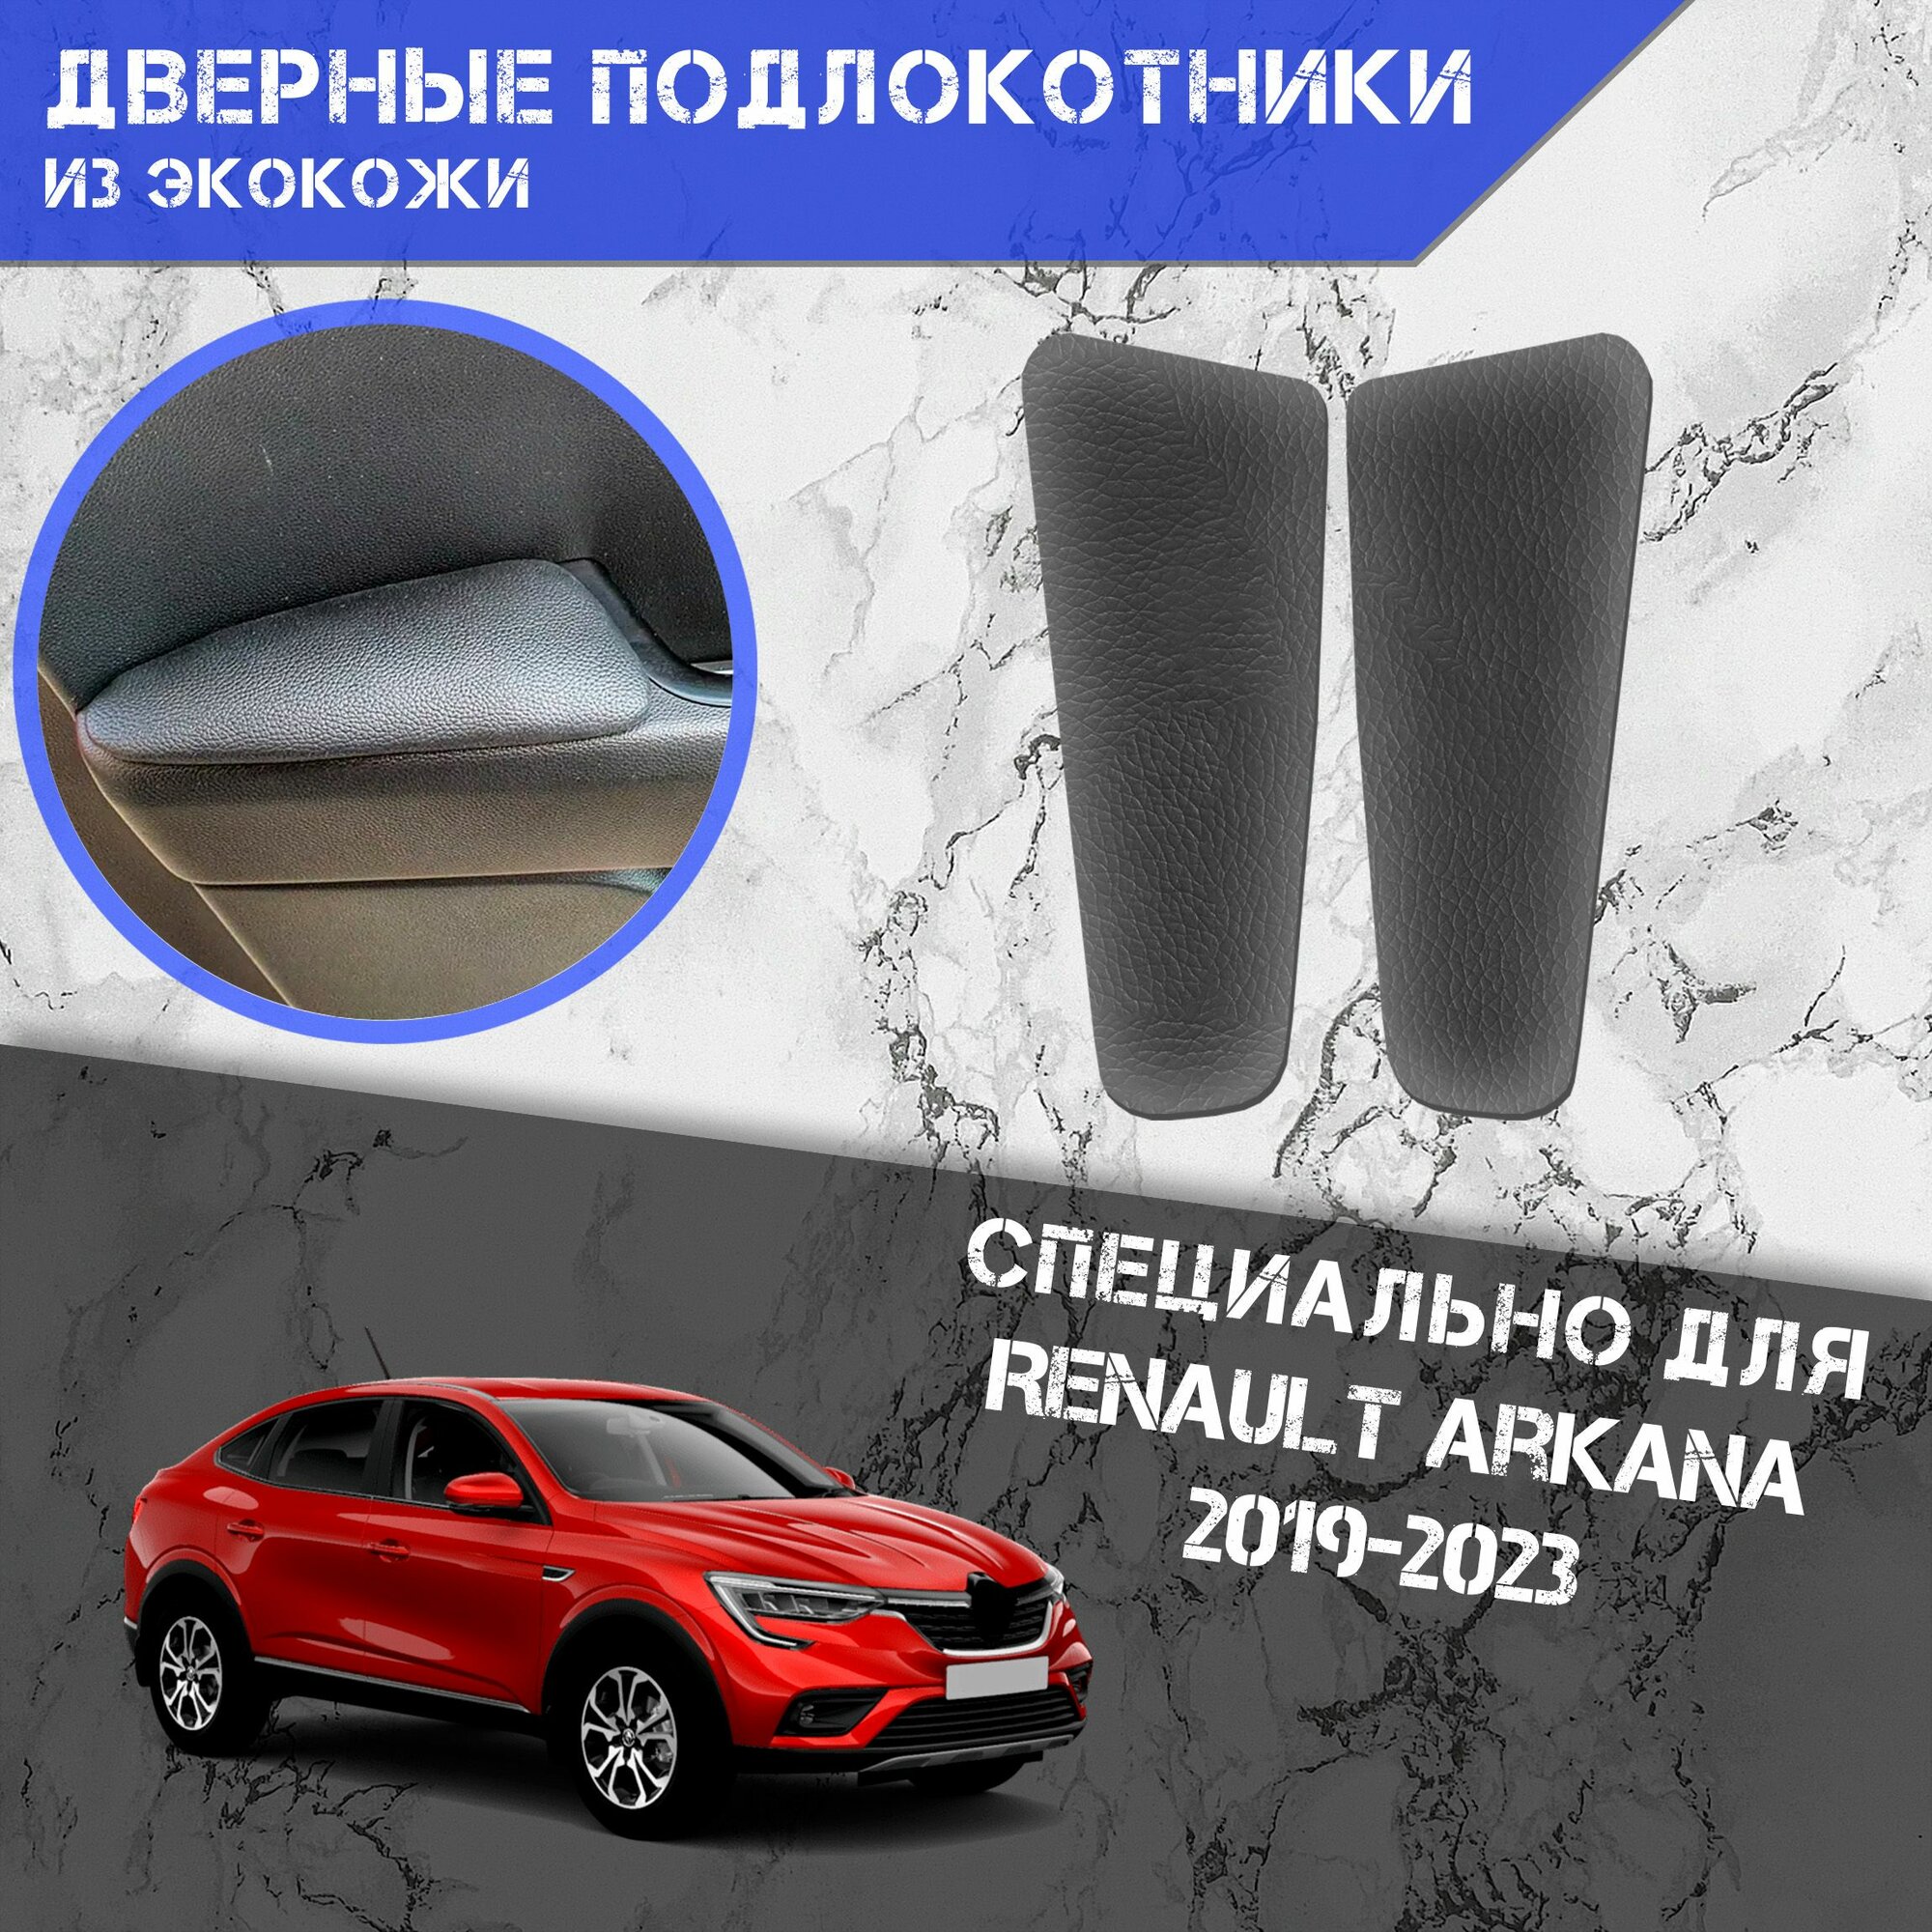 Дверные Подлокотники из экокожи на двери (Мягкие накладки) для Рено Ренаулт Аркана / Renault Arkana 2019-2023 (Передние 2 шт) Серые